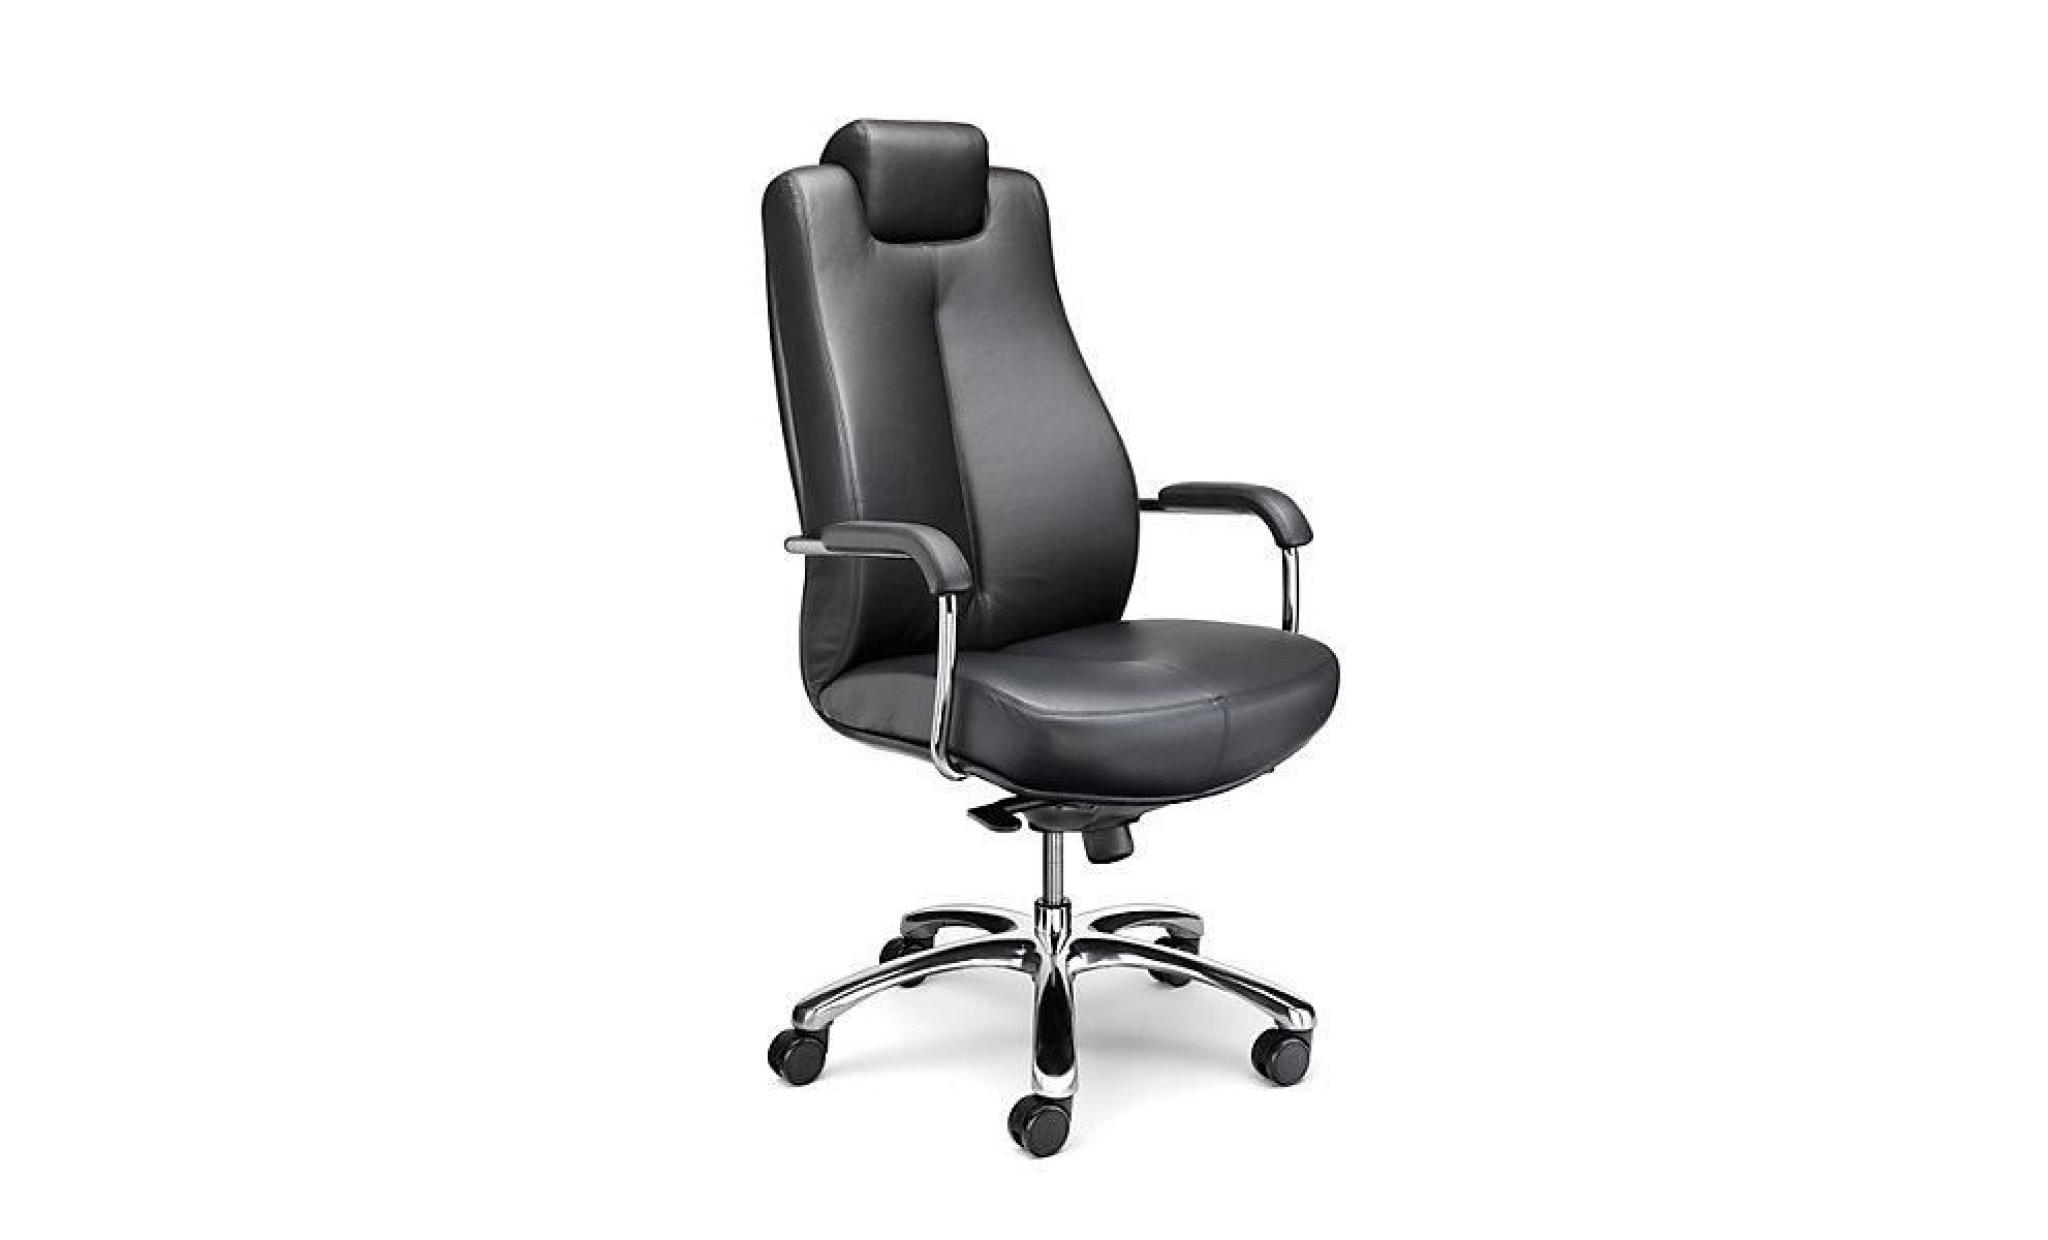 siège de bureau pivotant   fauteuil de bureau, cuir souple   noir, appuie tête réglable   chaise chaise de bureau chaises chaises de pas cher